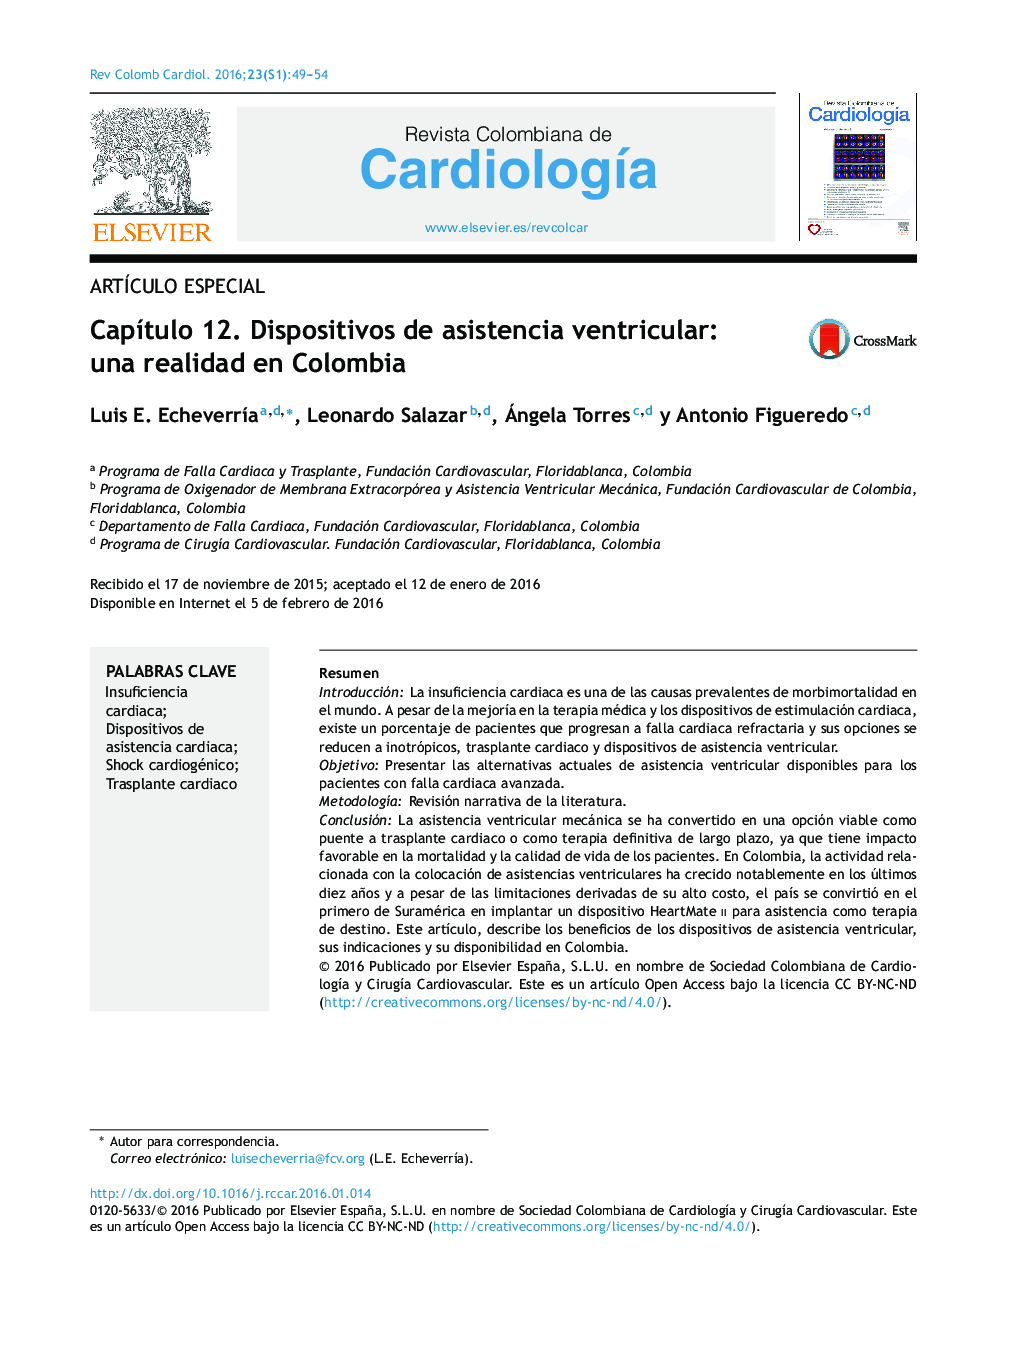 Capítulo 12. Dispositivos de asistencia ventricular: una realidad en Colombia